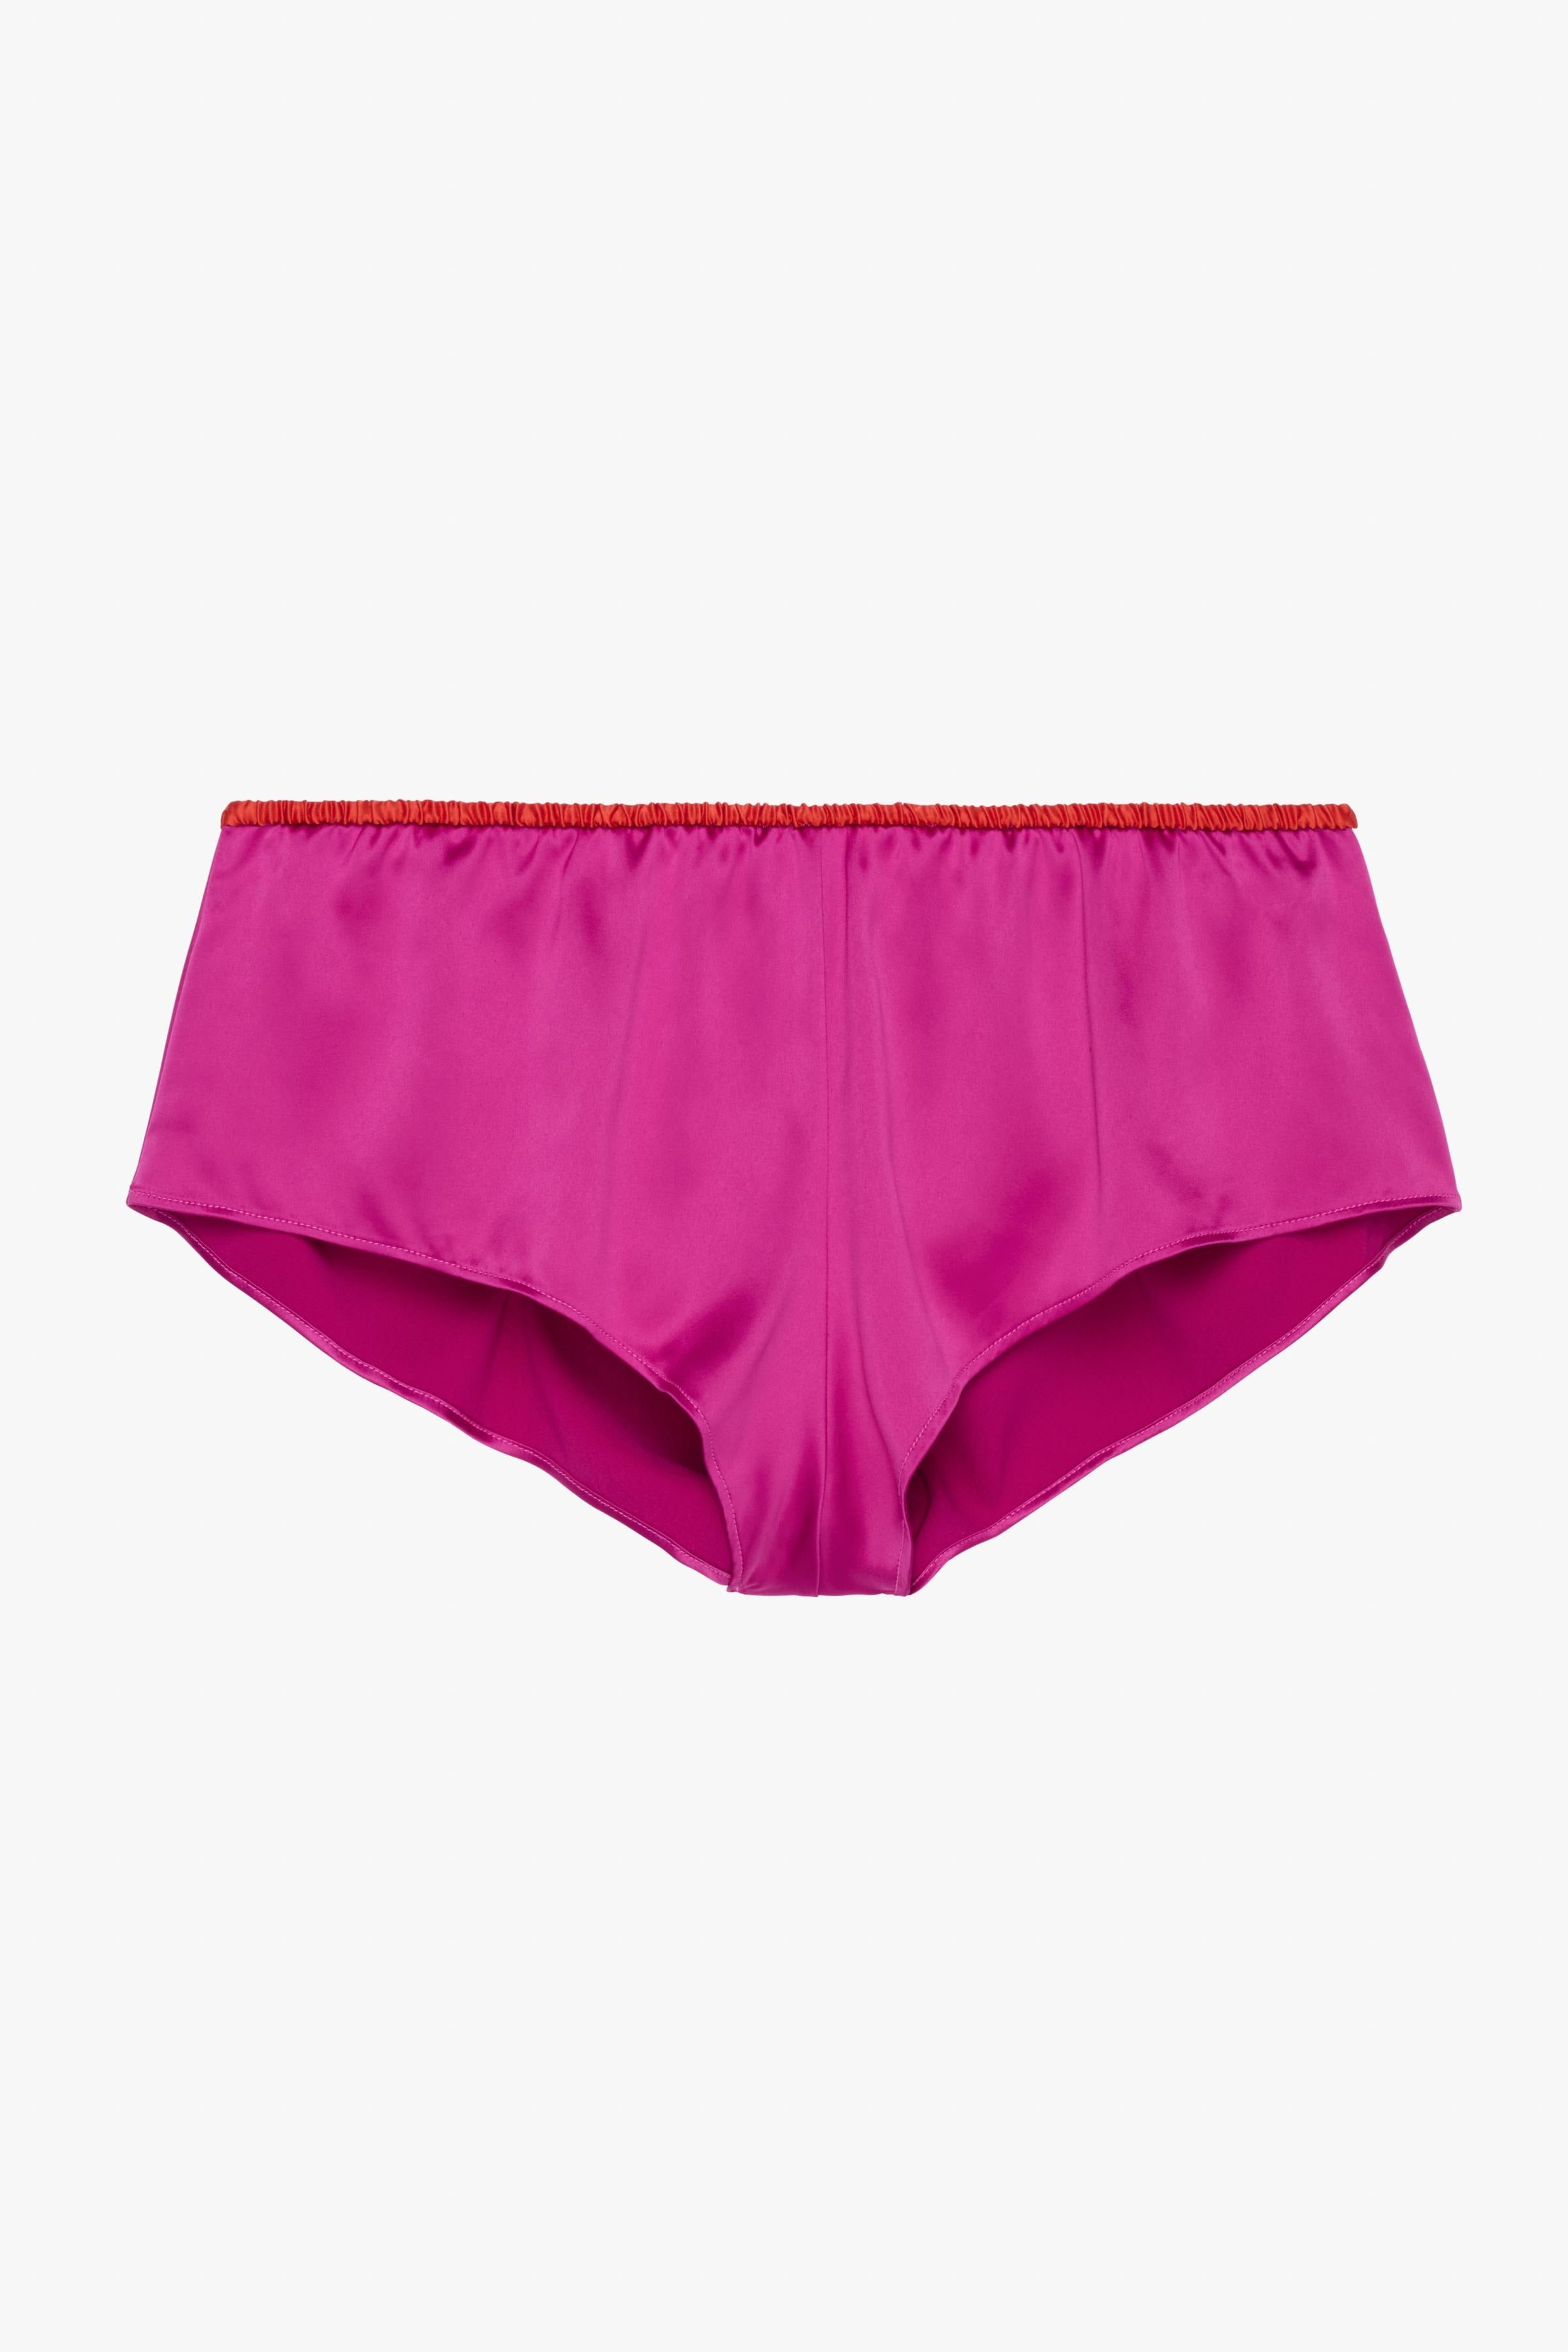 Calvin Klein Underwear Women's Flocked Hearts String Bikini, Temper, Red,  X-Large: Buy Online at Best Price in UAE 